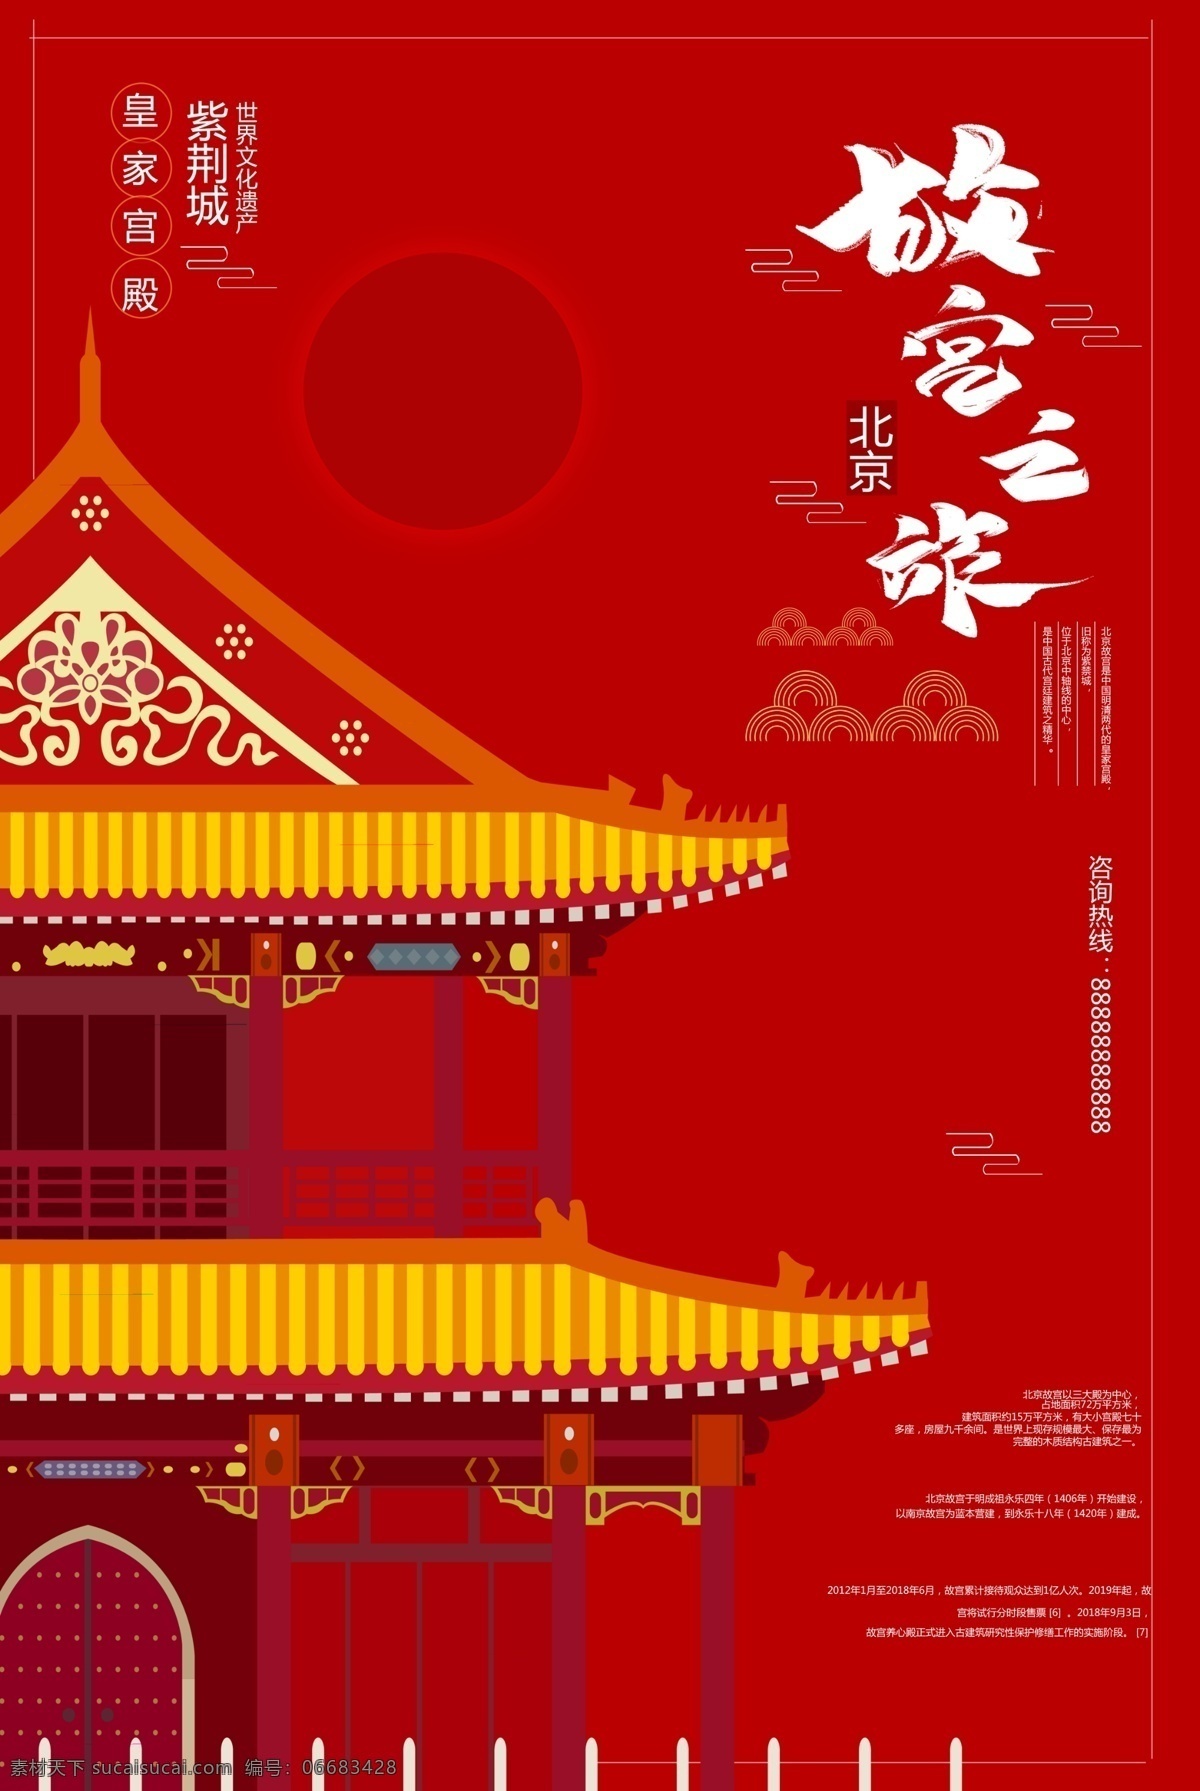 故宫之旅 海报 招贴 水墨 古色古香 古典 优雅 中国风 行业 合集